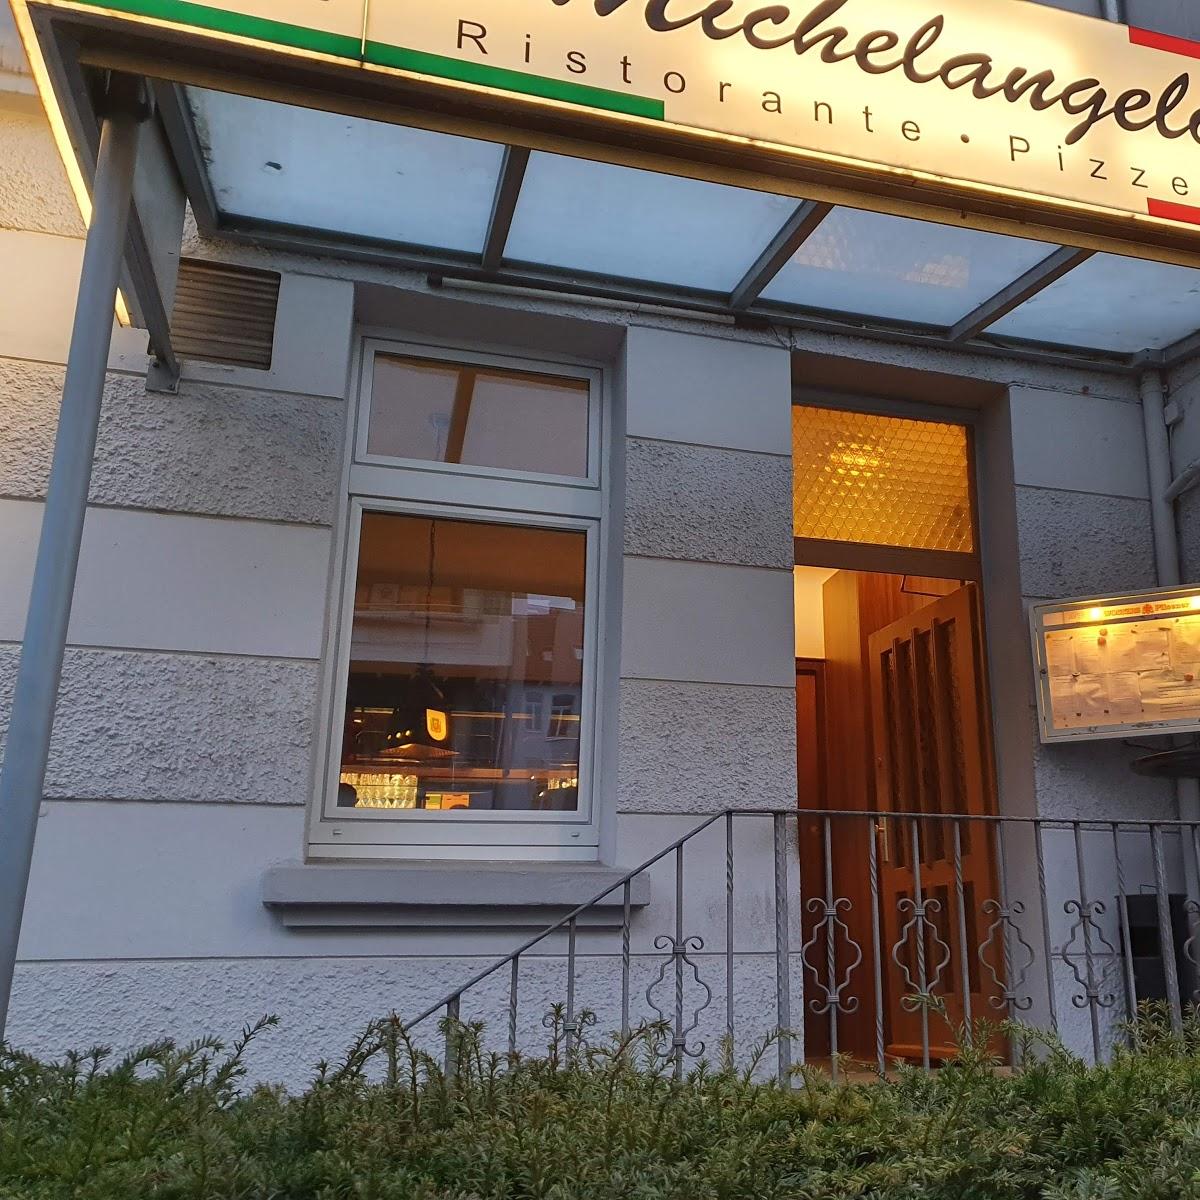 Restaurant "Michelangelo Pizzeria" in  Braunschweig